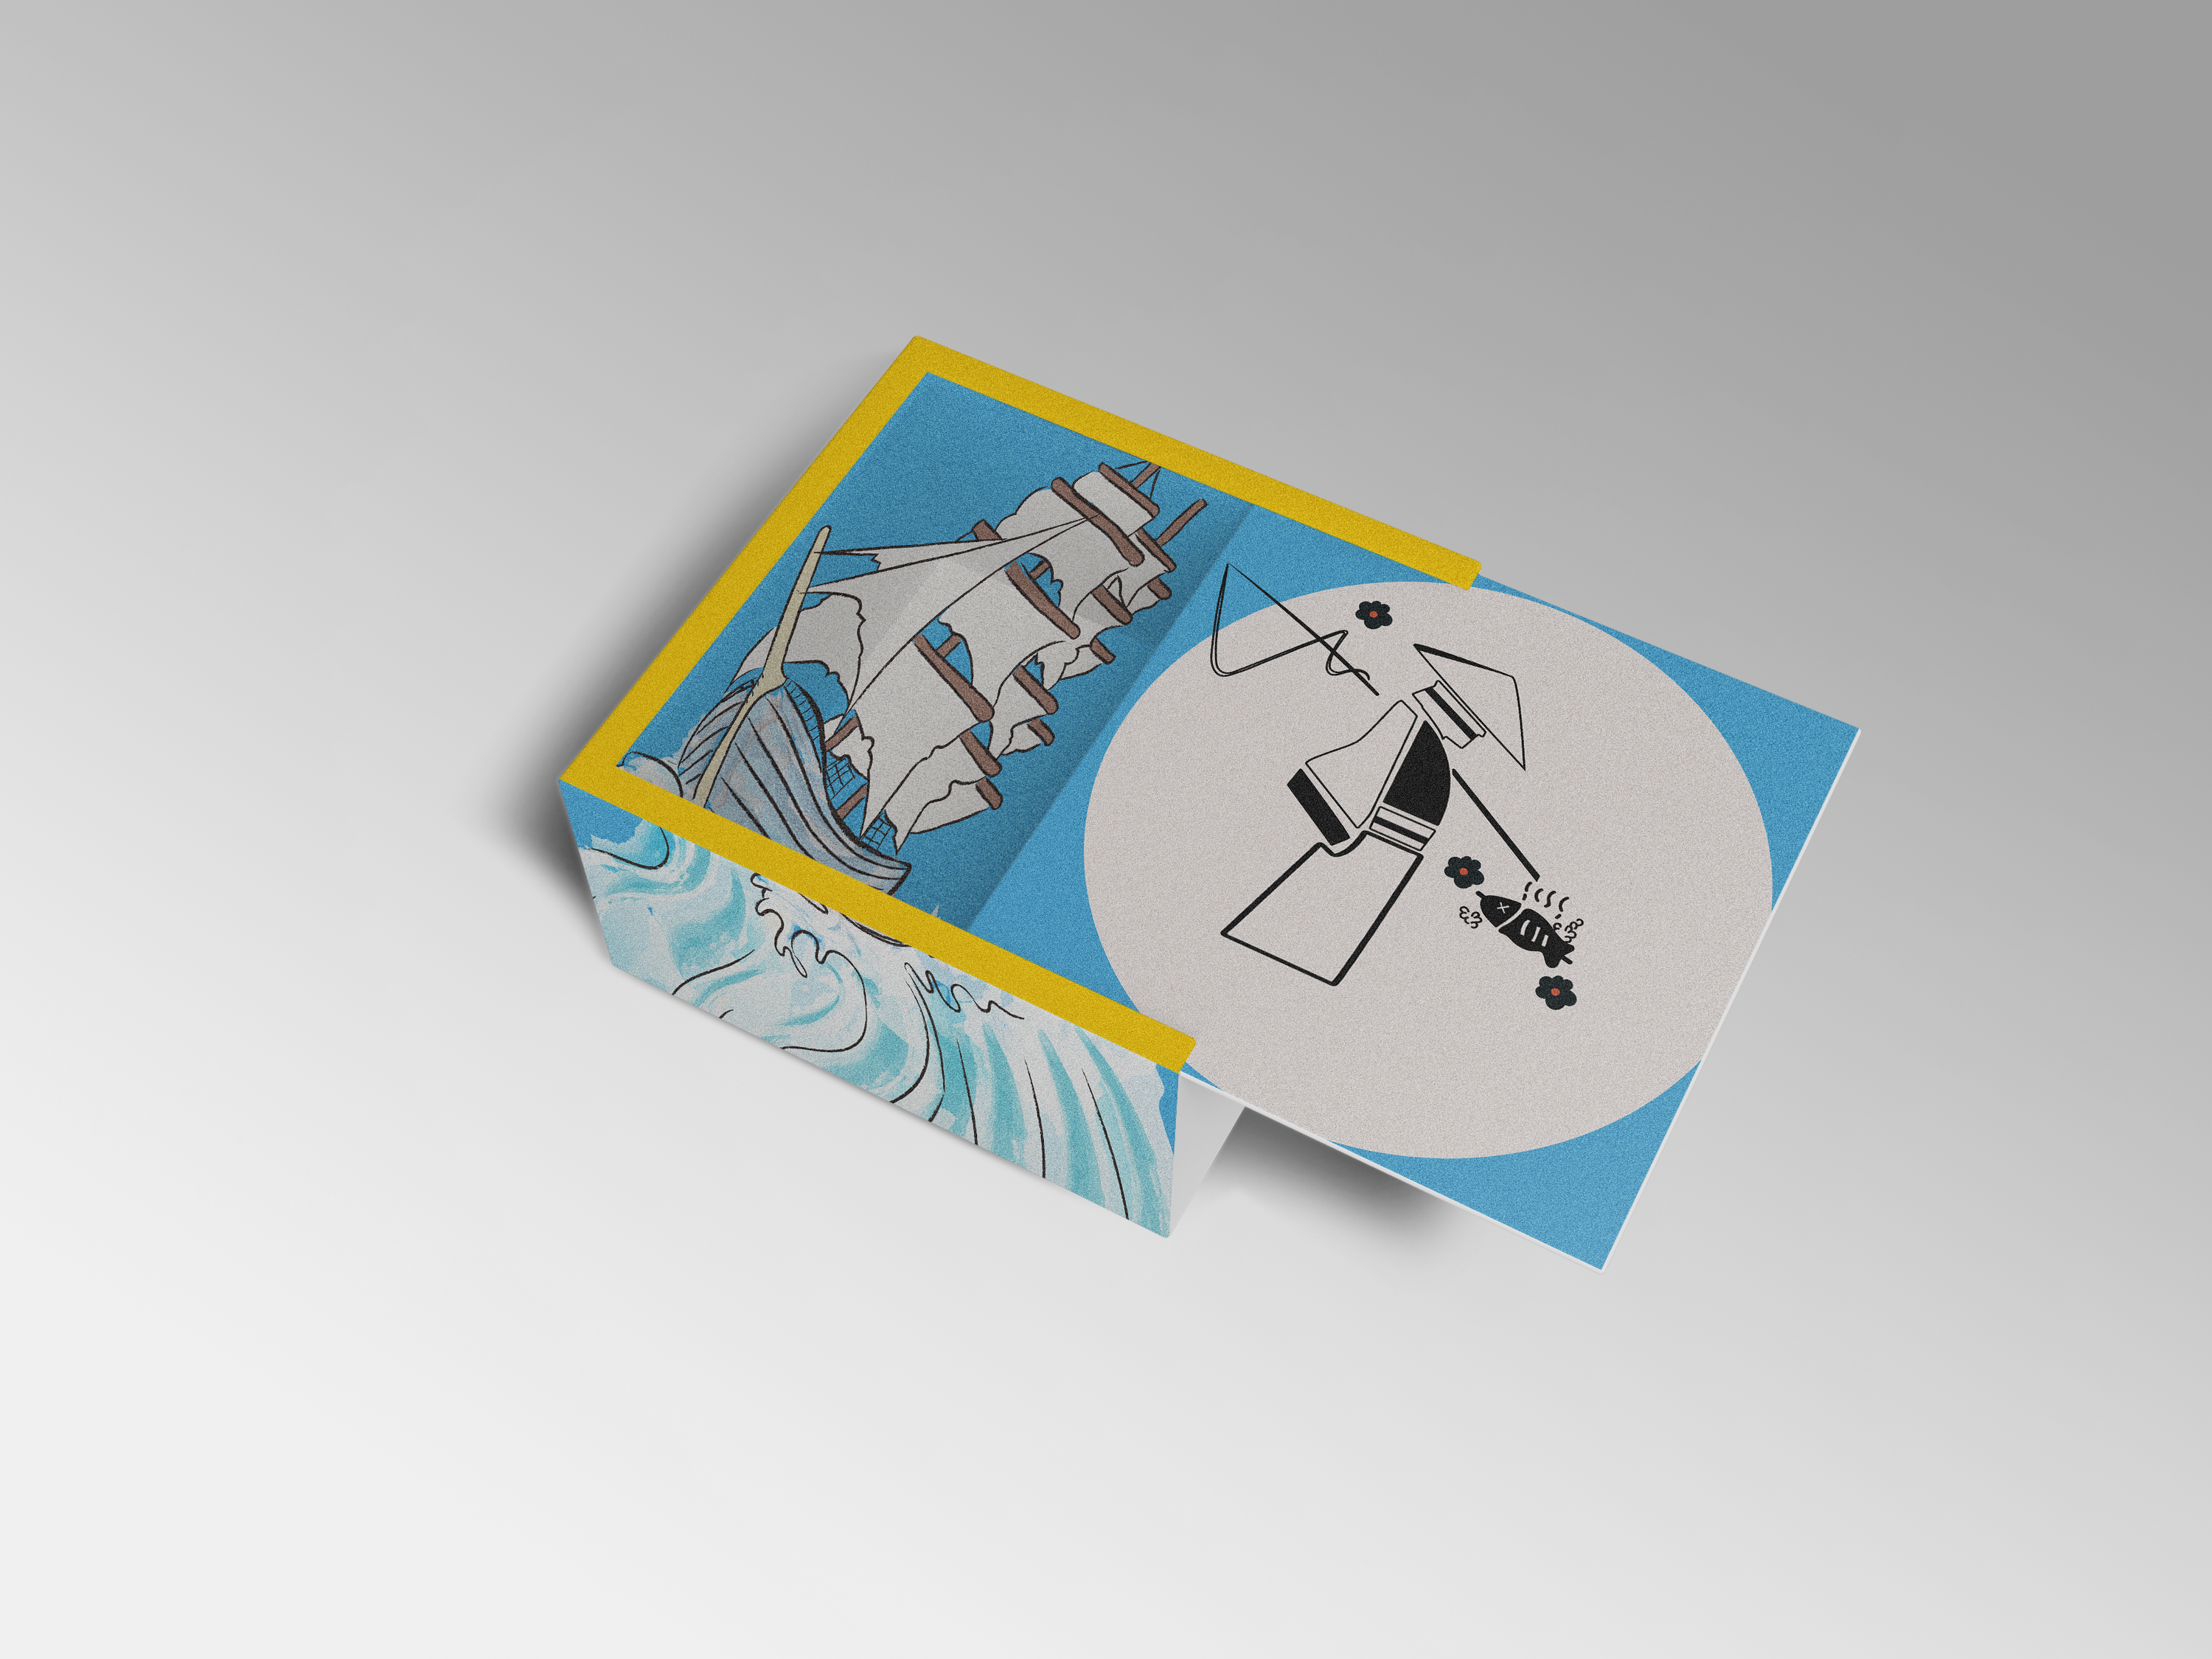 《三月字·修》标签包装设计海鲜类样机绘画作品信息创作时间2018/09